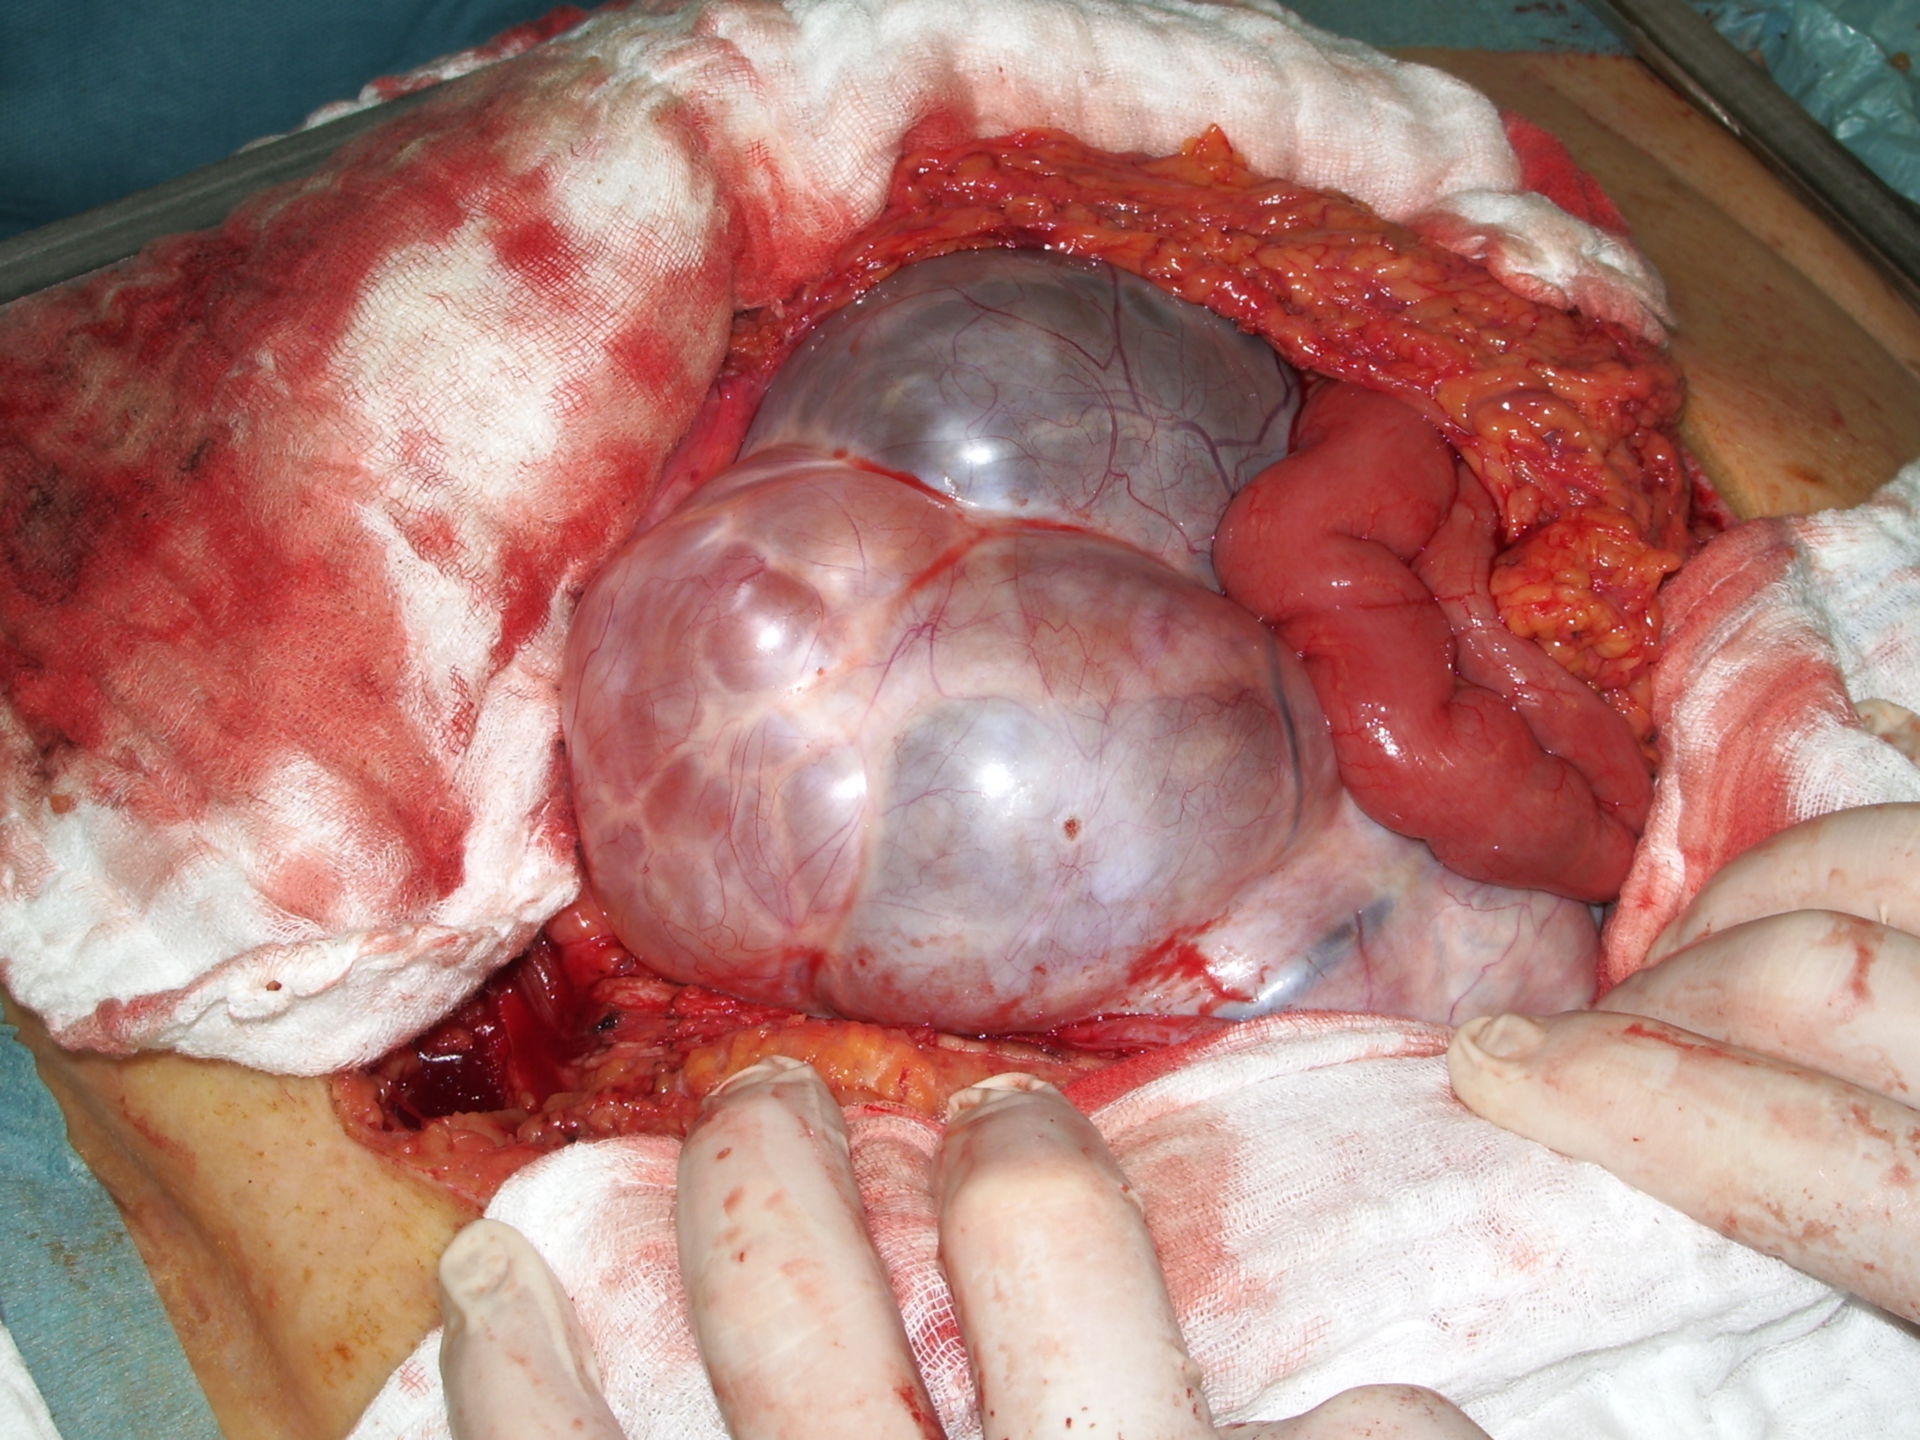 Ovarian tumor